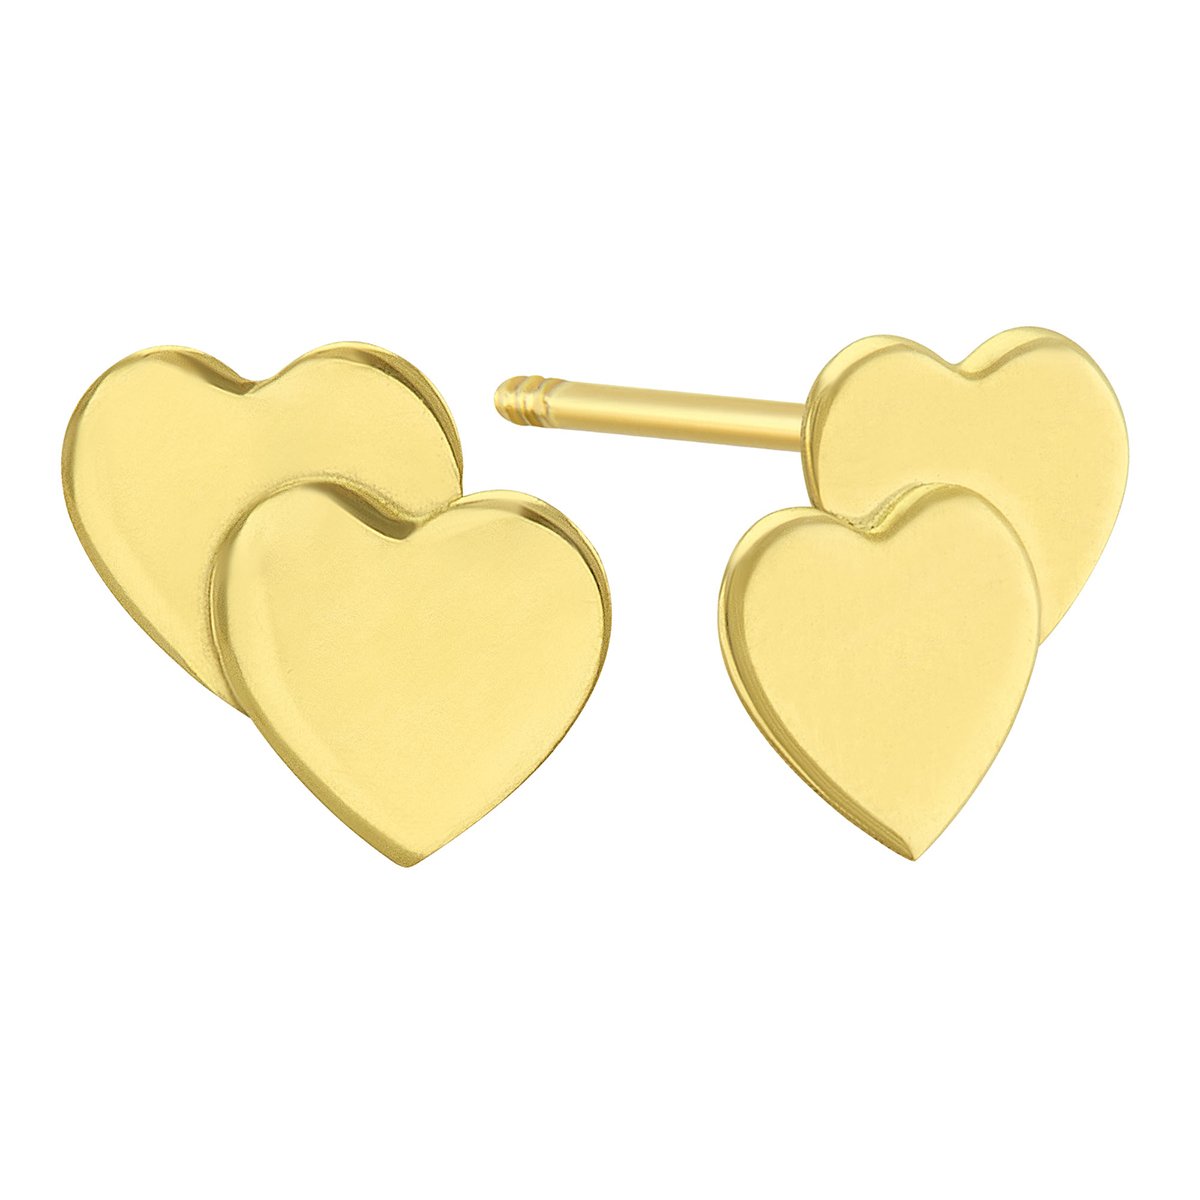 Broqueles de Oro Amarillo 14K Doble Corazón Sabelli